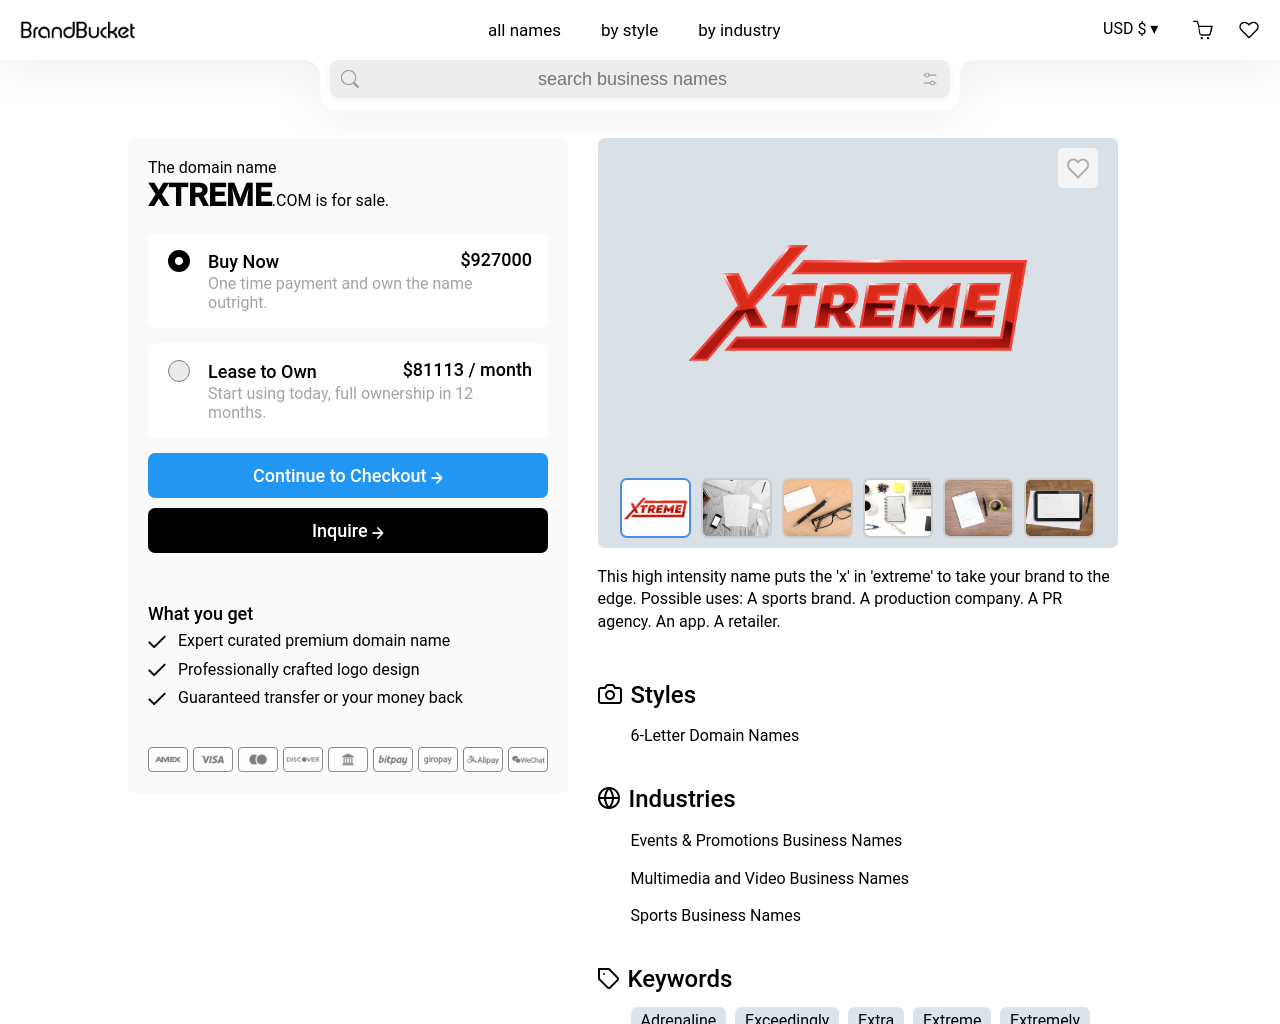 xtreme.com